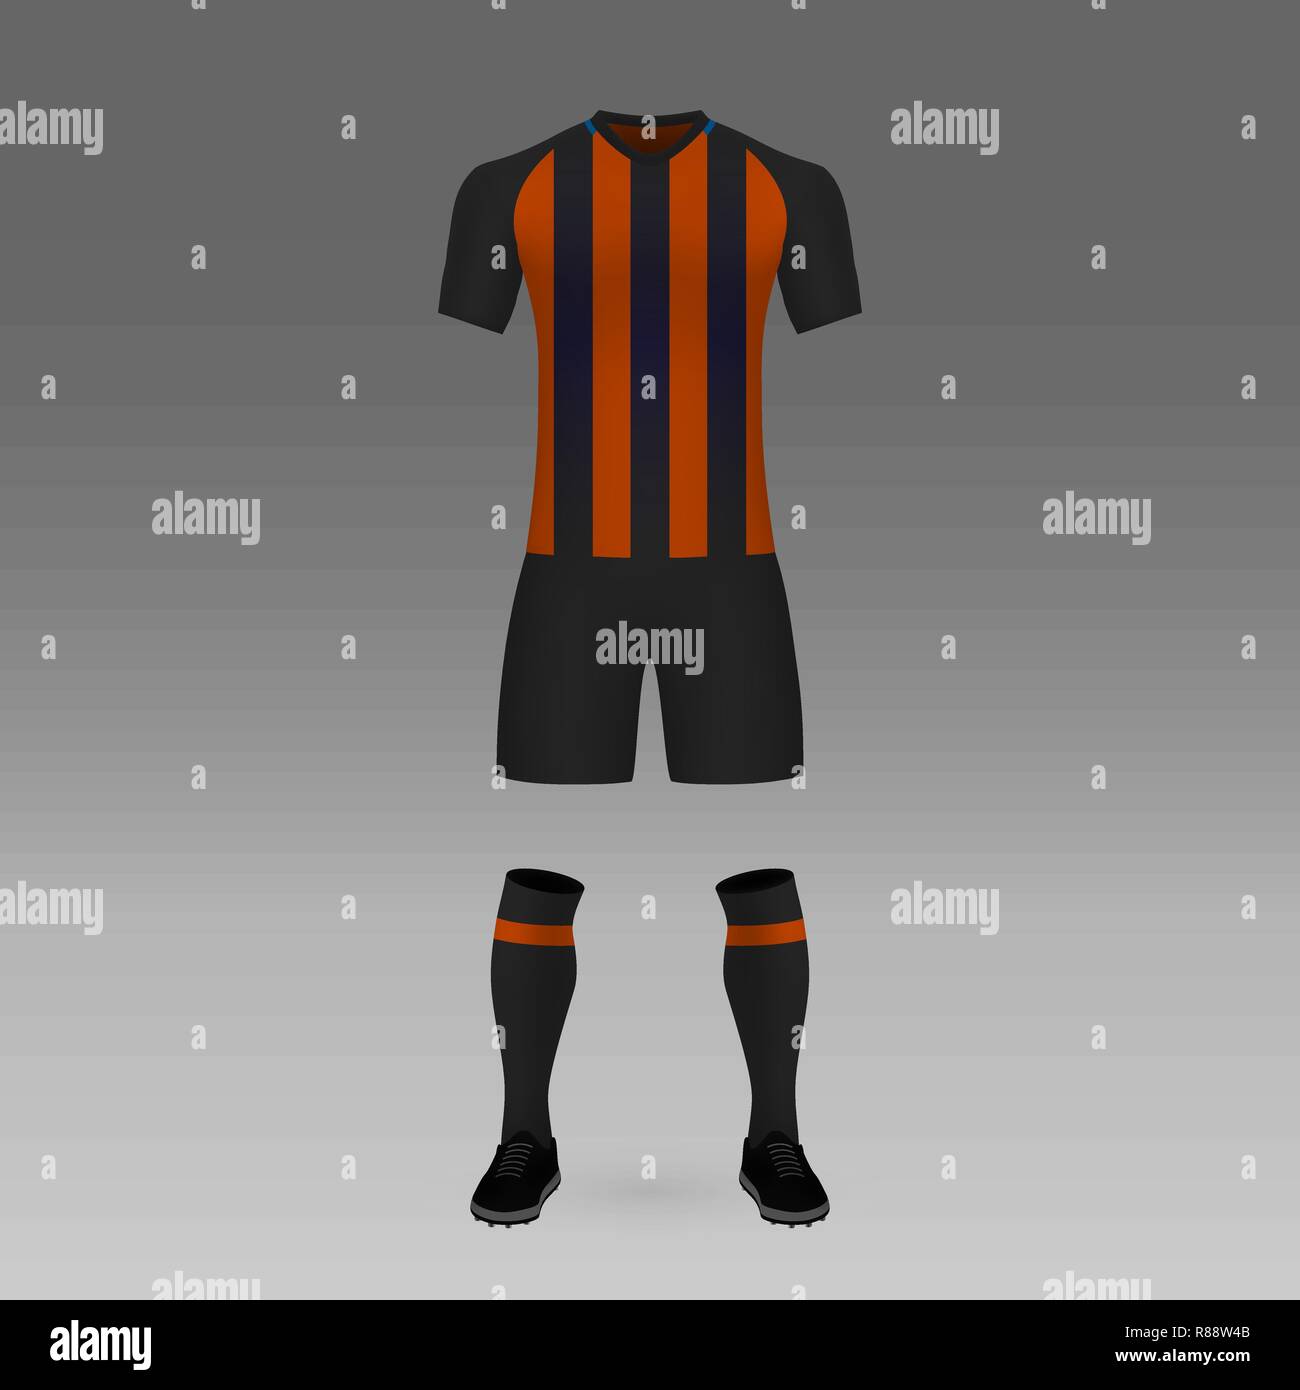 football kit Shakhtar Donetsk, shirt template for soccer jersey. Vector  illustration Stock Vector Image & Art - Alamy